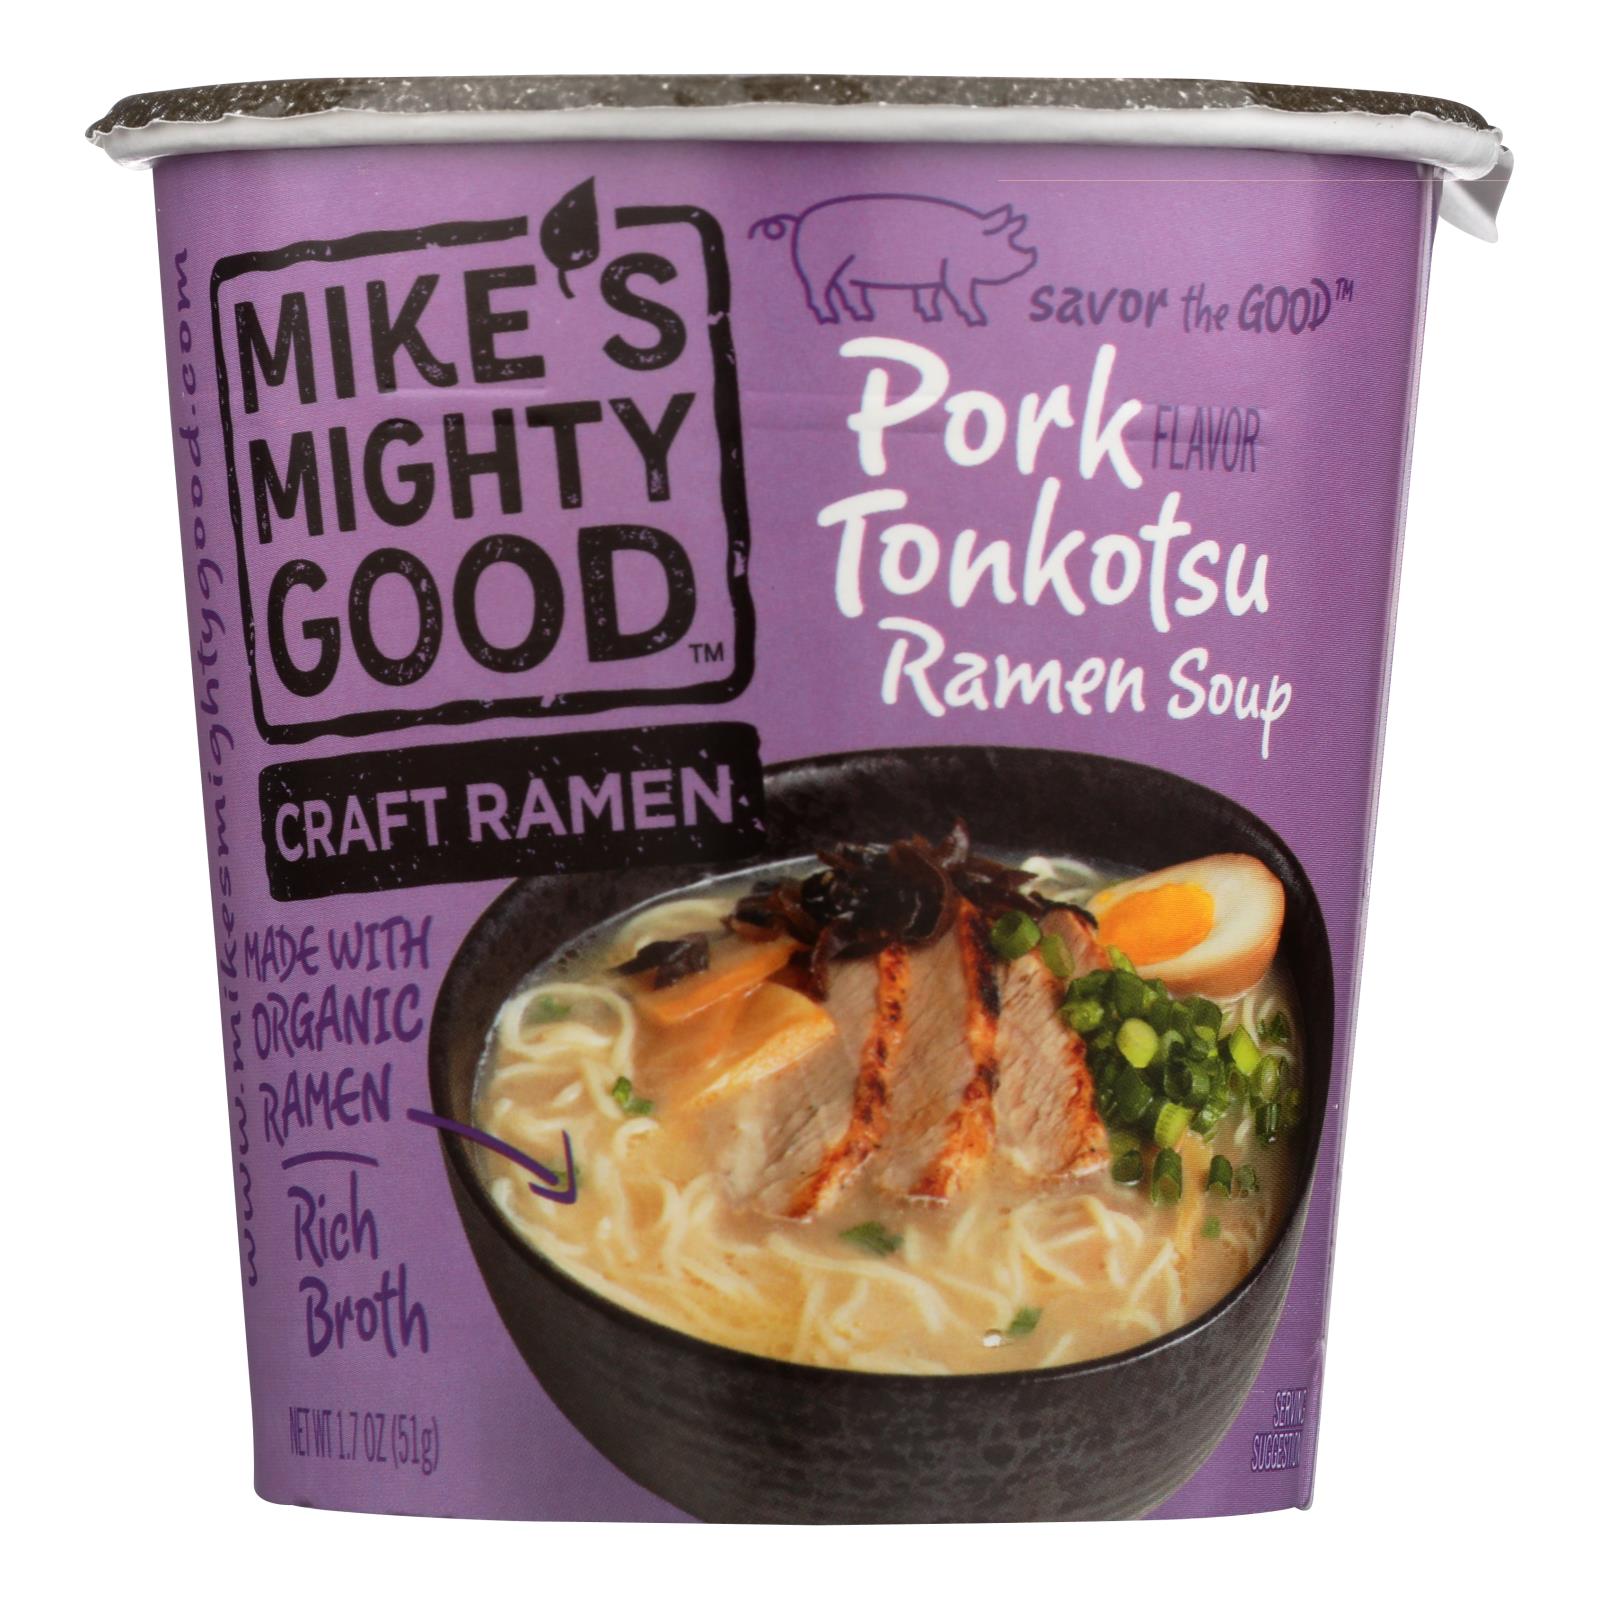 Mike's Mighty Good Pork Tonkotsu Ramen Soup - 6개 묶음상품 - 1.7 OZ